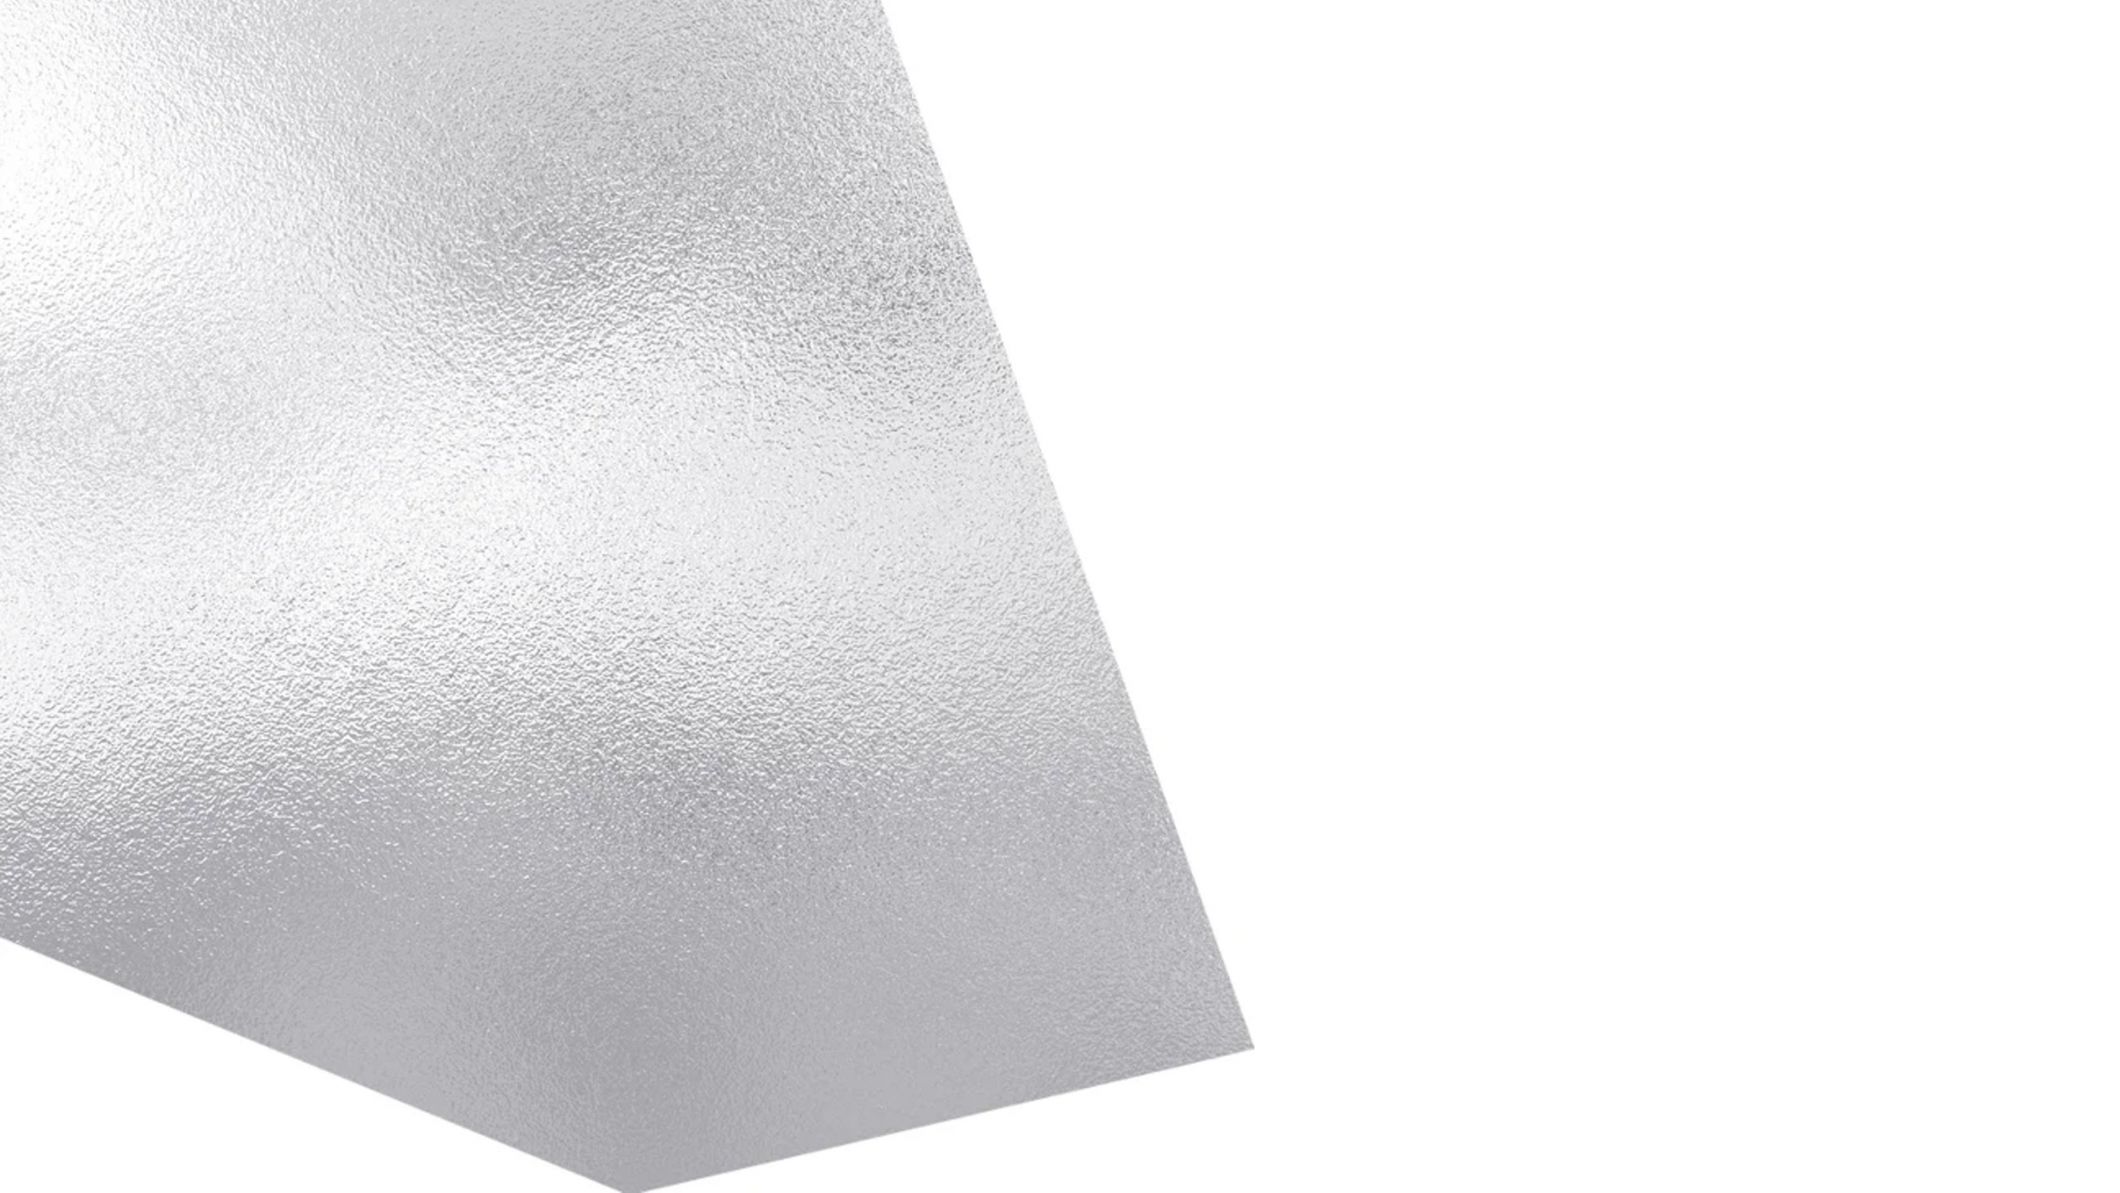 Metall Aluminum AlSi10Mg für den industriellen 3D-Druck